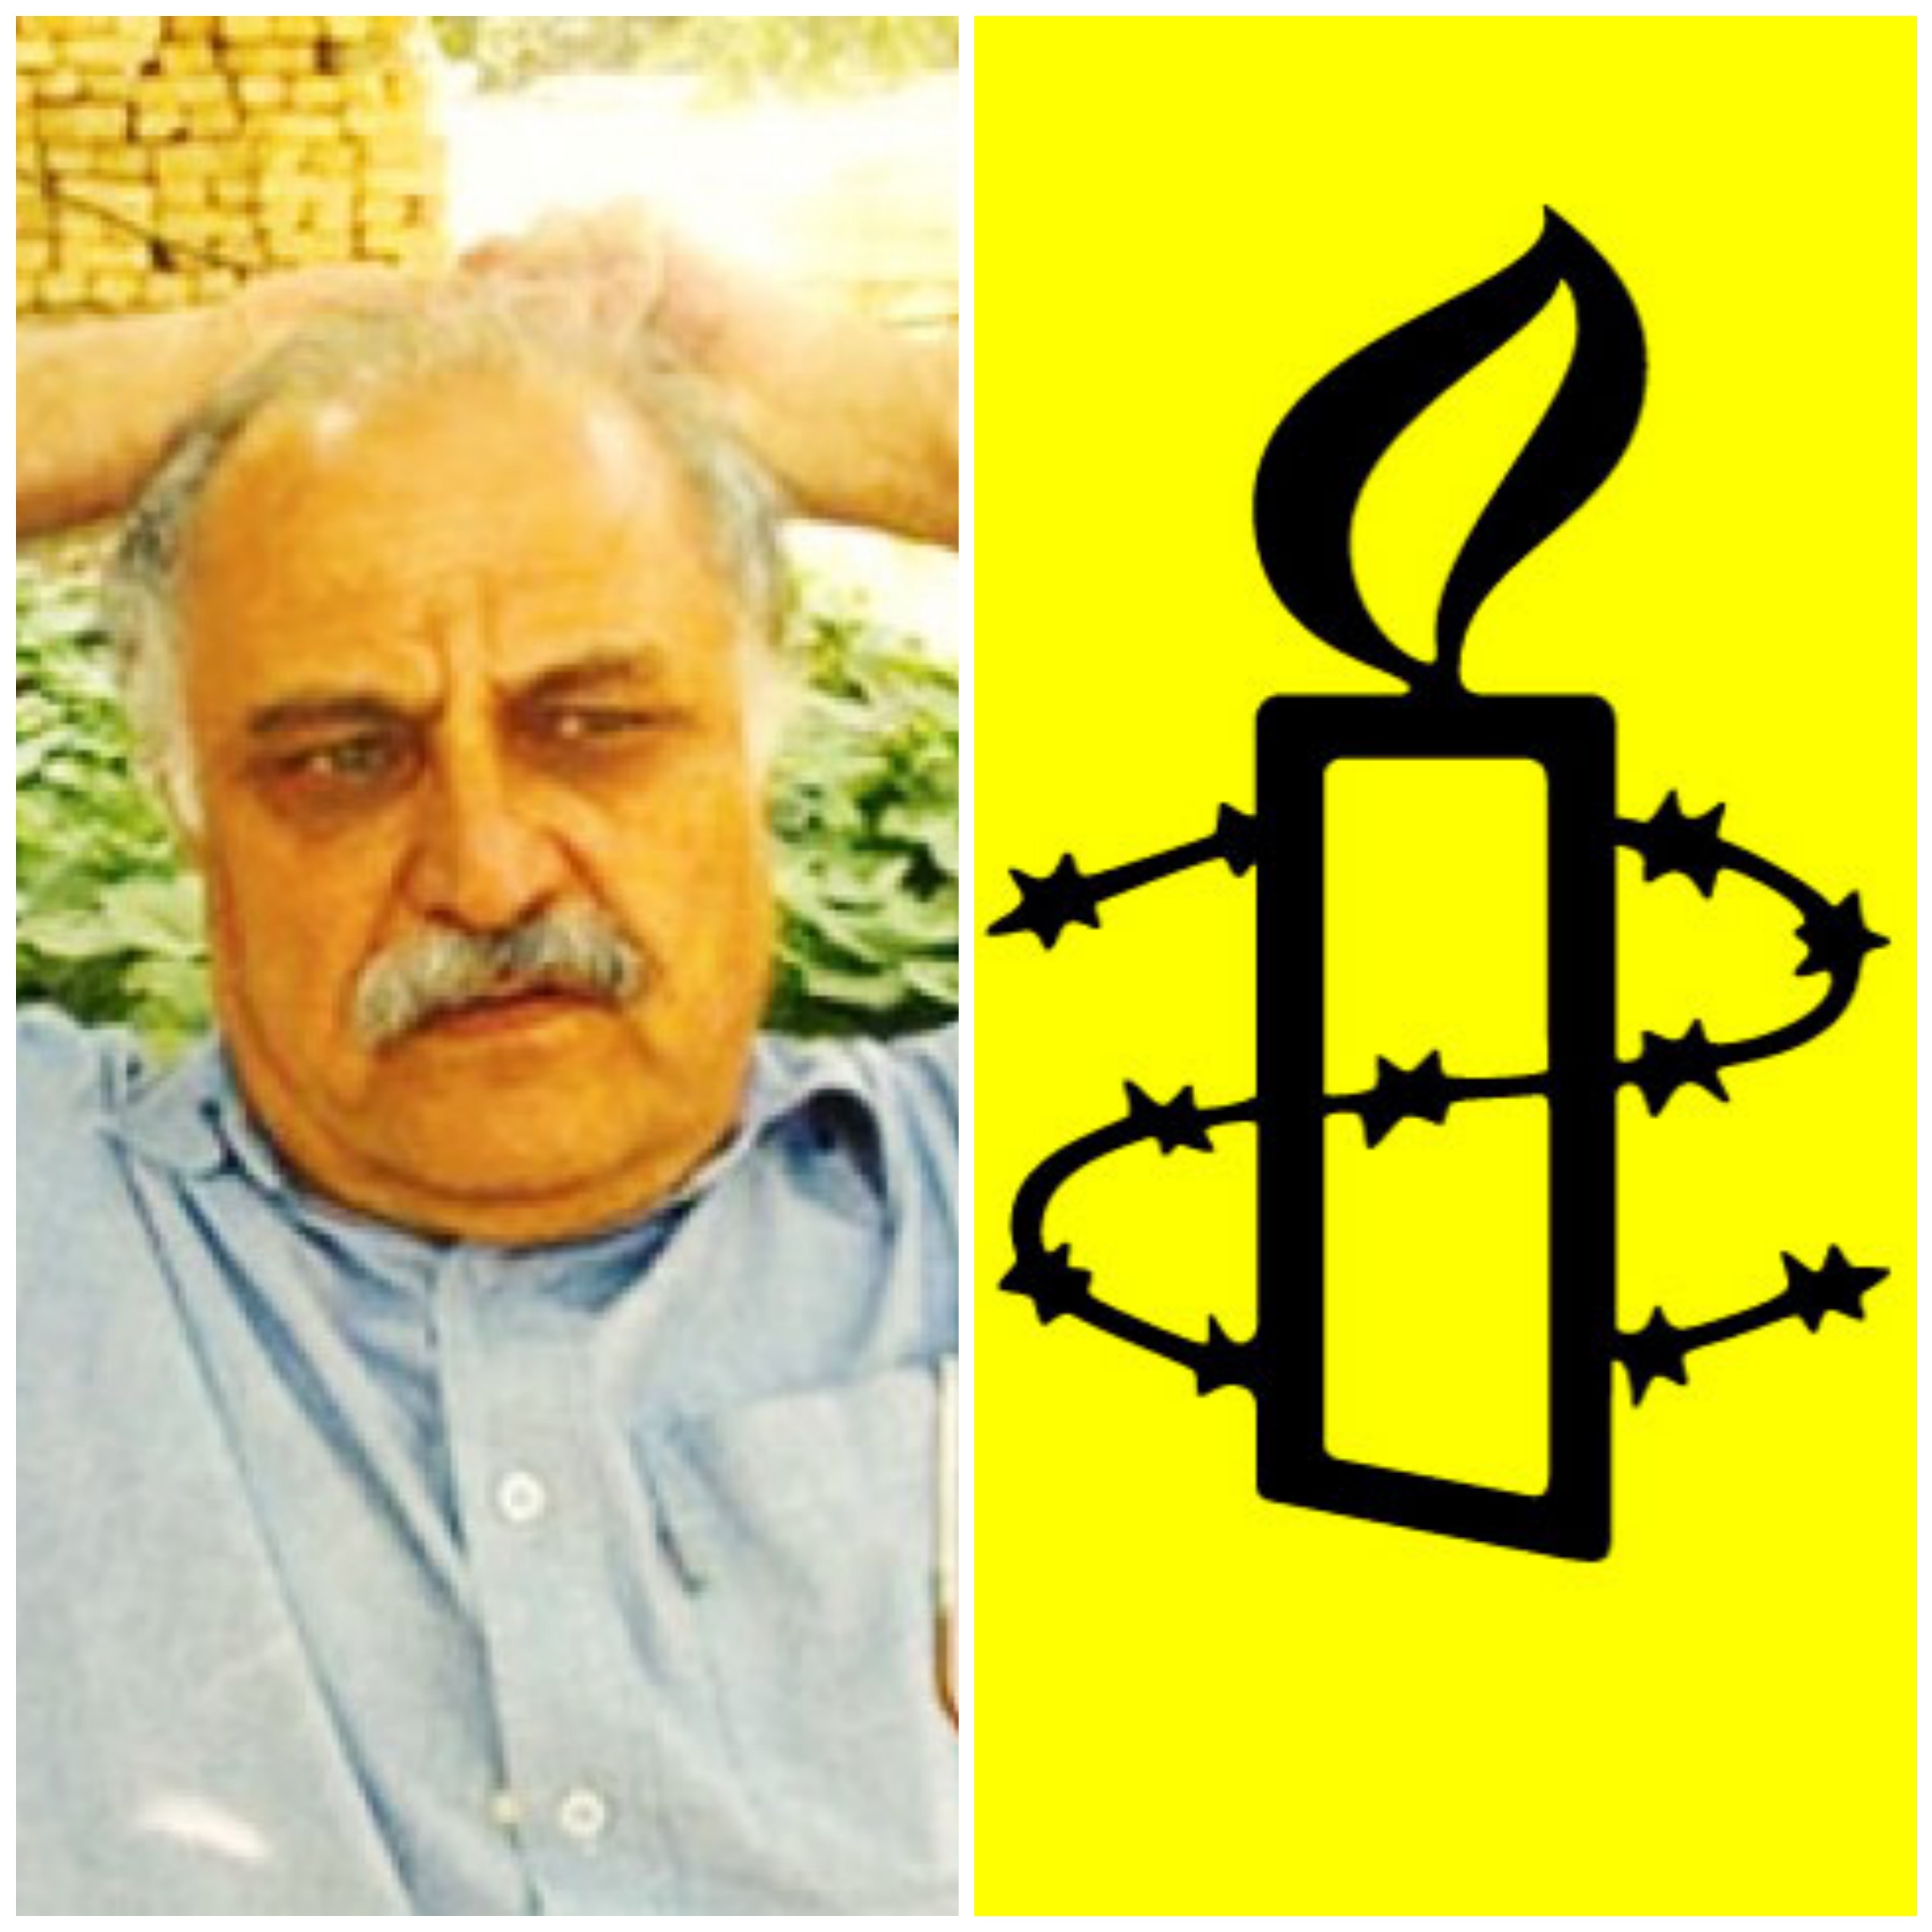 سازمان عفو بین الملل خواستار آزادی حسین رفیعی شد